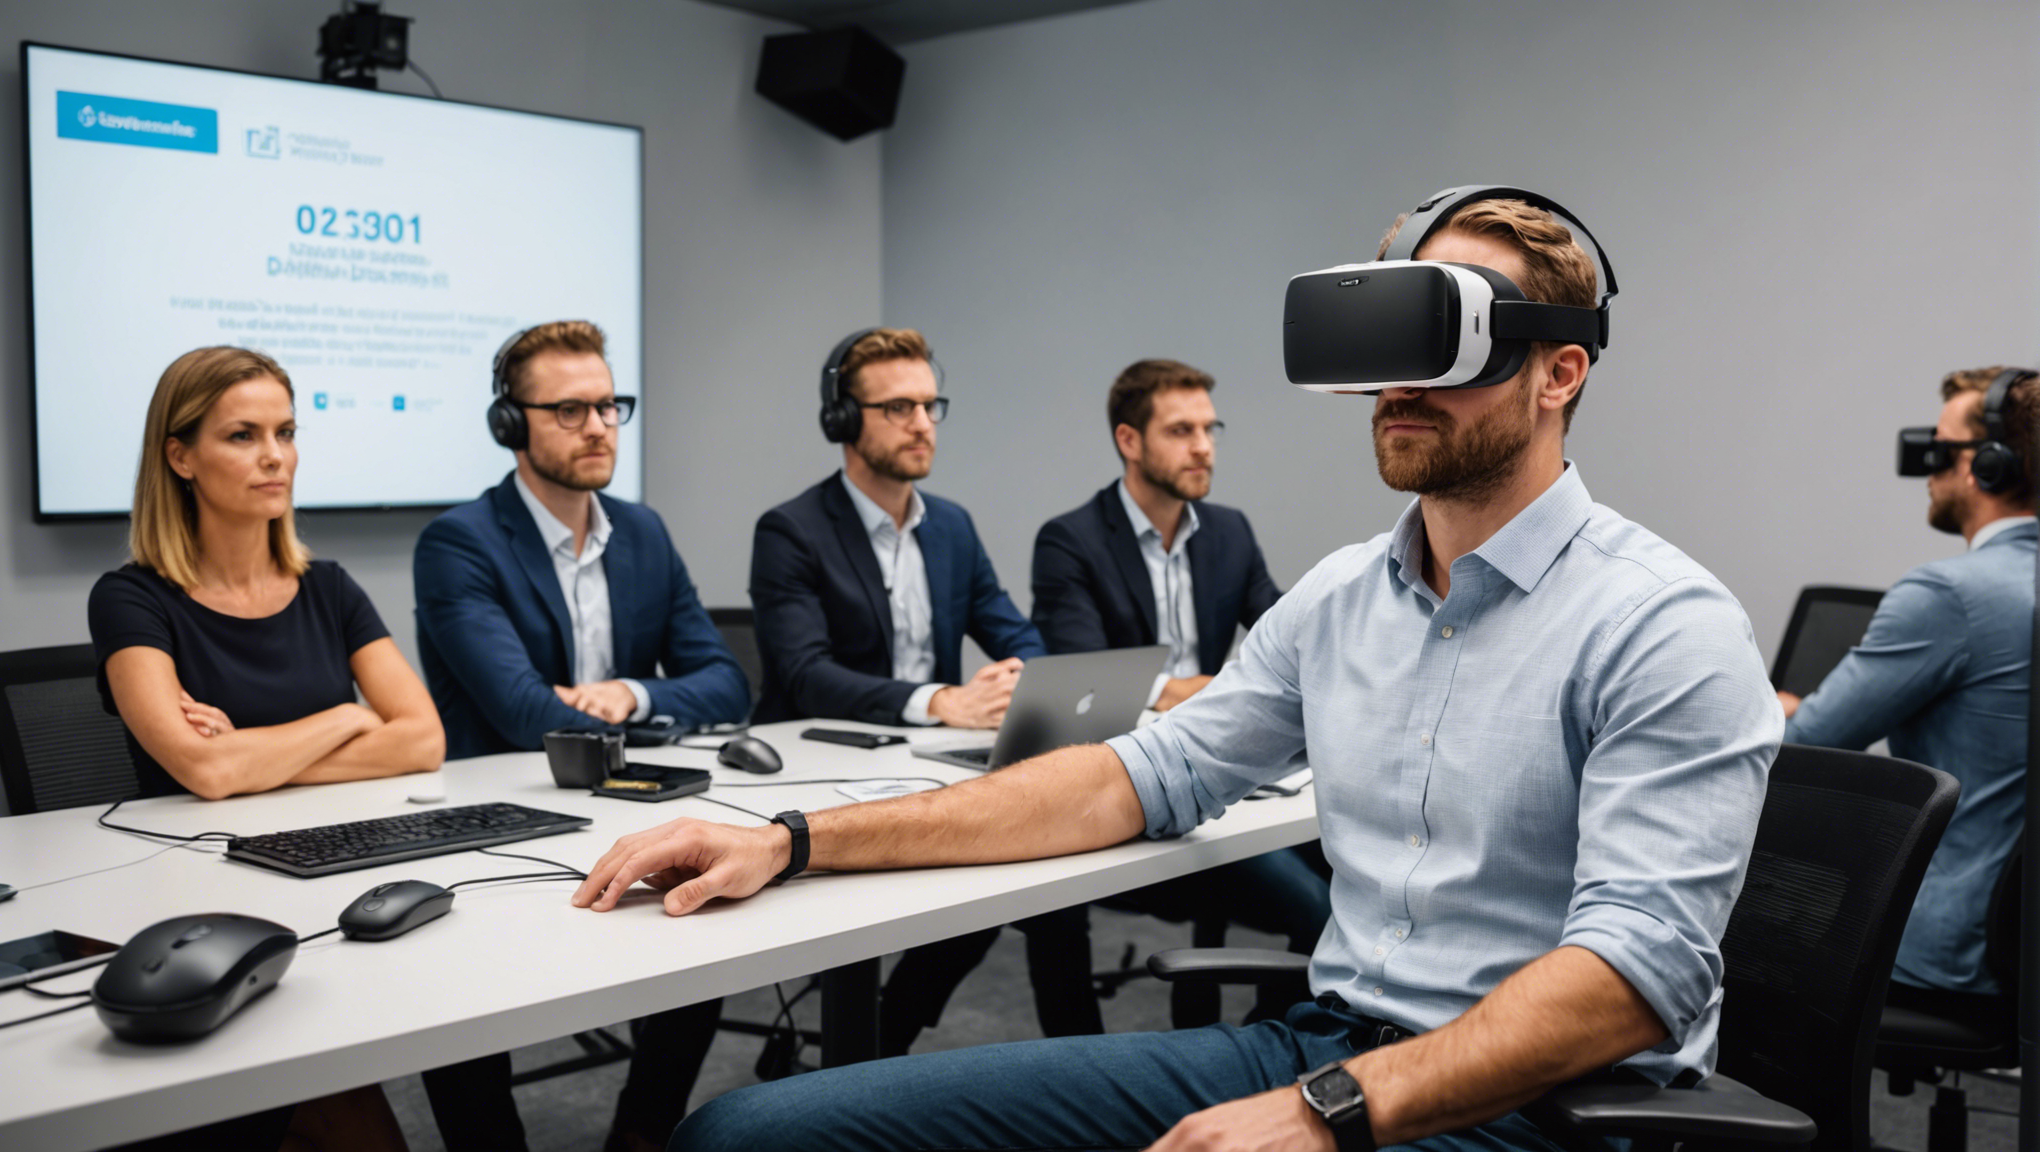 découvrez comment créer une conférence d'entreprise inoubliable en louant un simulateur de réalité virtuelle. impressionnez vos participants et offrez une expérience immersive unique.